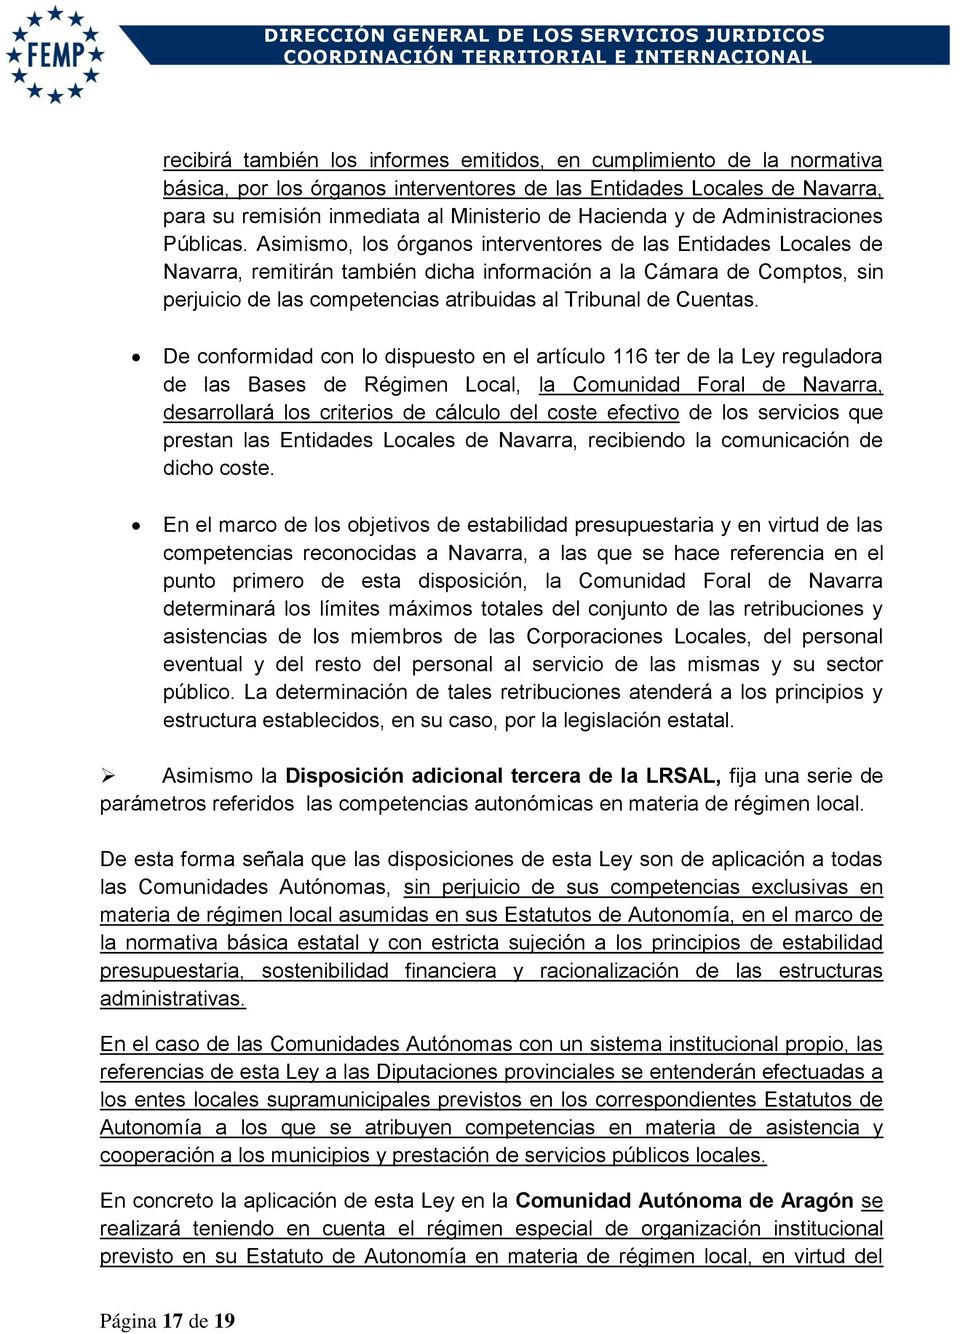 Asimismo, los órganos interventores de las Entidades Locales de Navarra, remitirán también dicha información a la Cámara de Comptos, sin perjuicio de las competencias atribuidas al Tribunal de